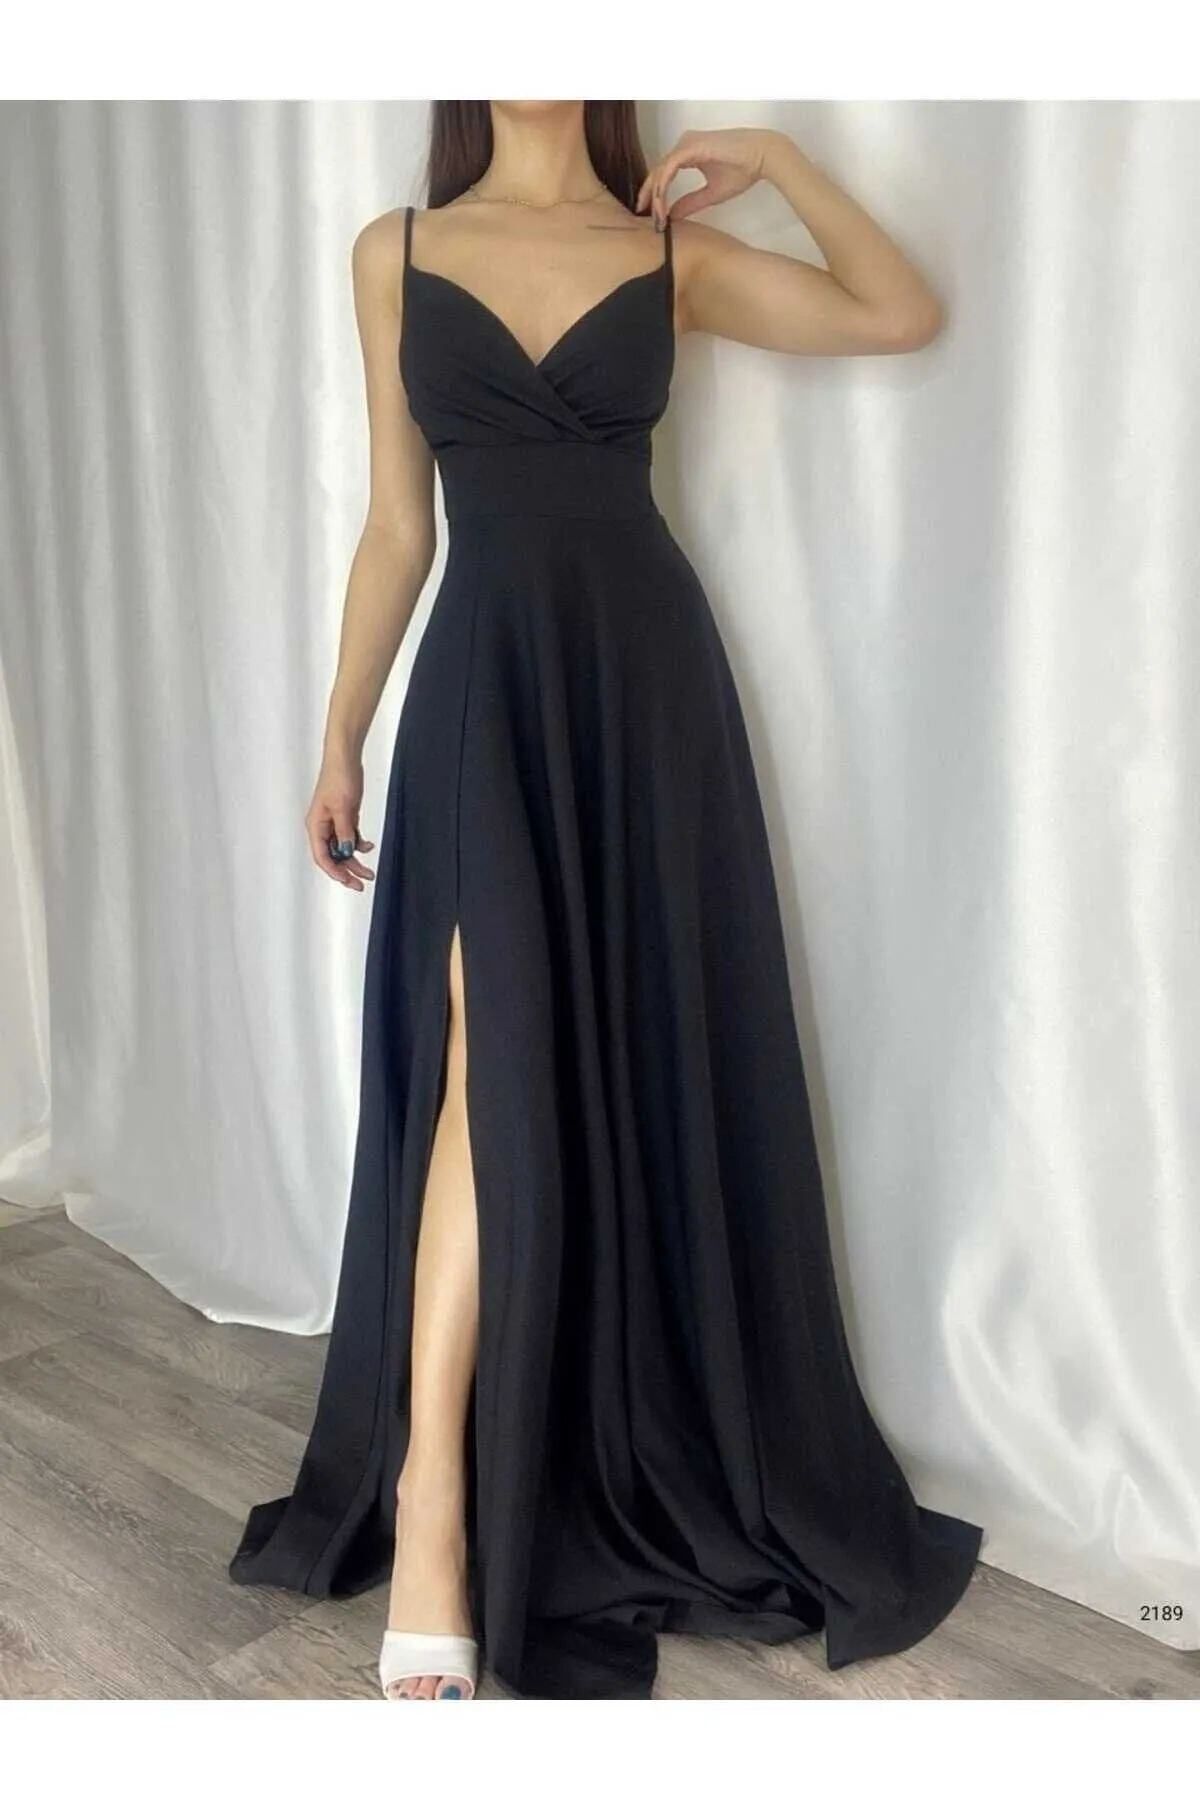 ALFUDO Moda Collection Siyah Krep Kumaş Yırtmaç Detaylı Abiye Elbise